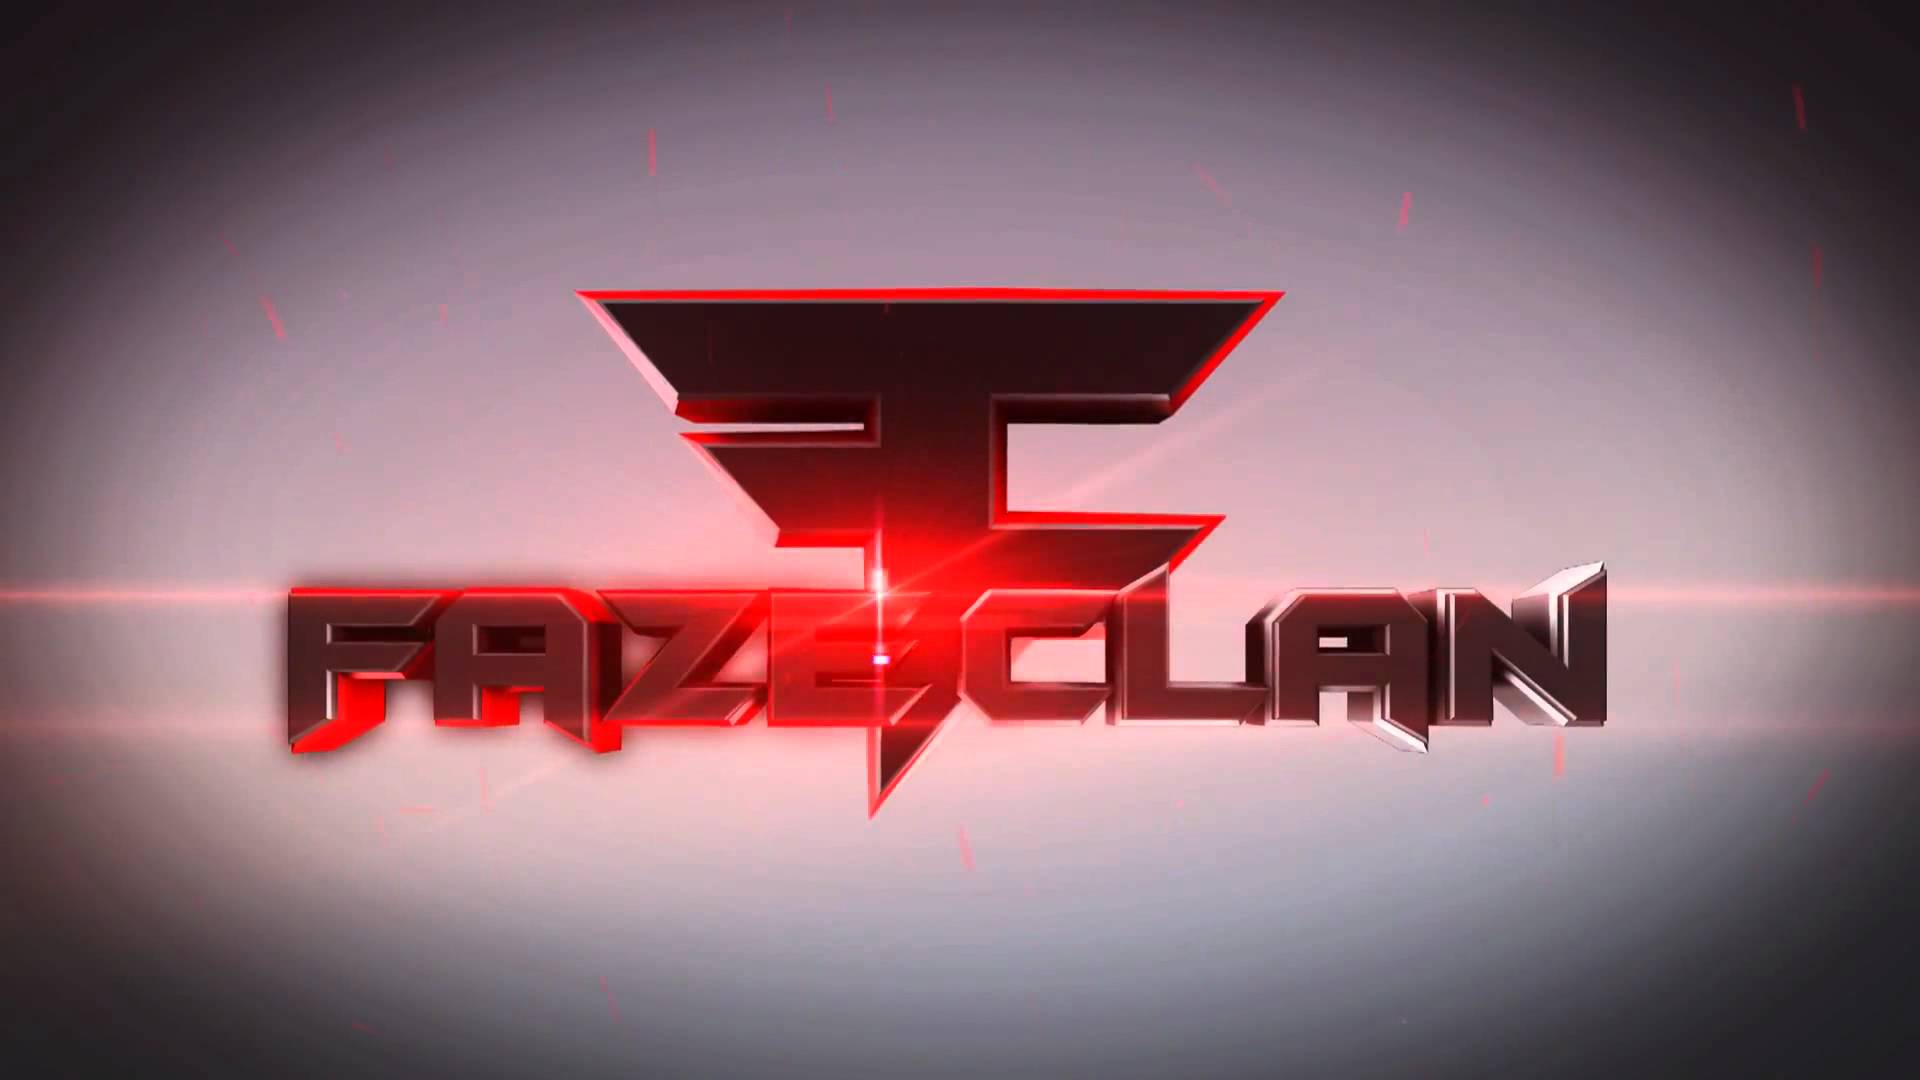 HD Clan Logo - FaZe Clan Wallpaper